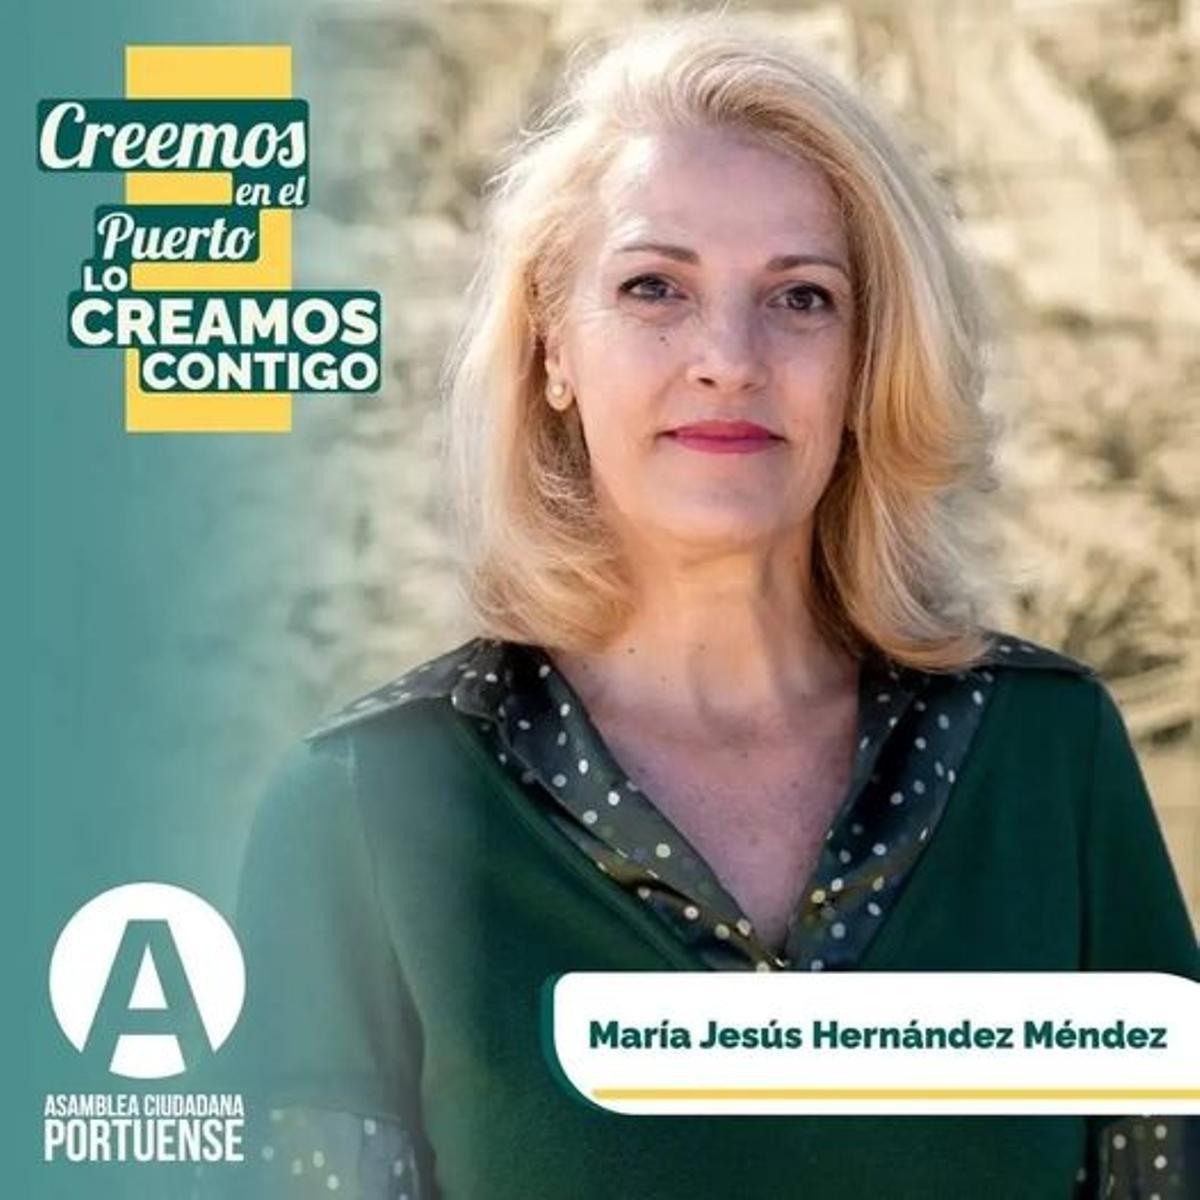 Un cartel electoral de María Jesús Hernández Méndez (ACP)